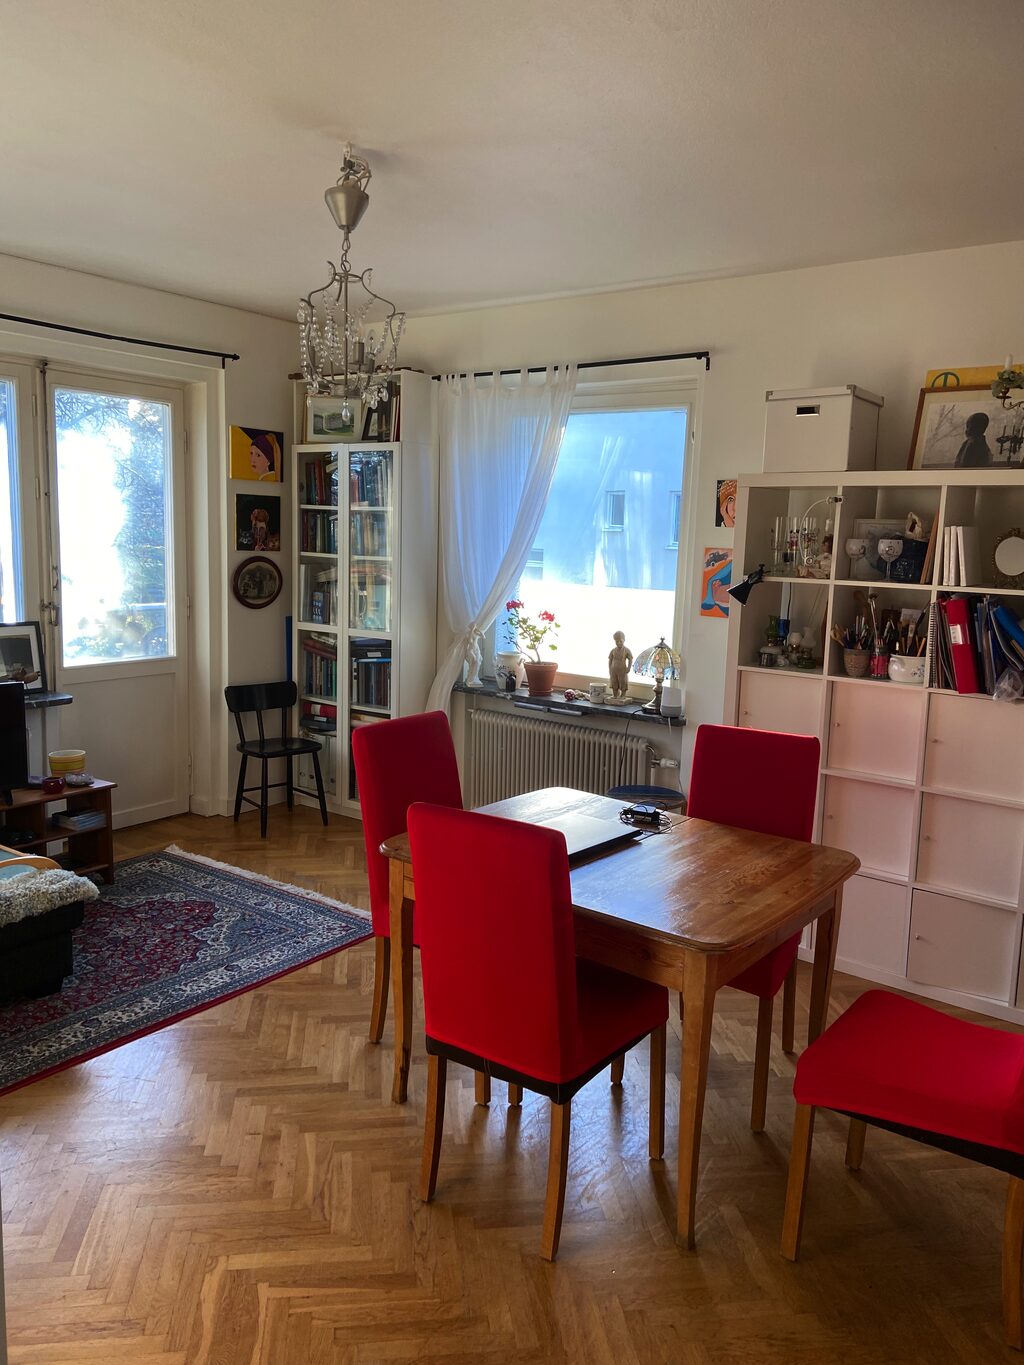 Lägenhetsbyte - Vänersborgsvägen 16